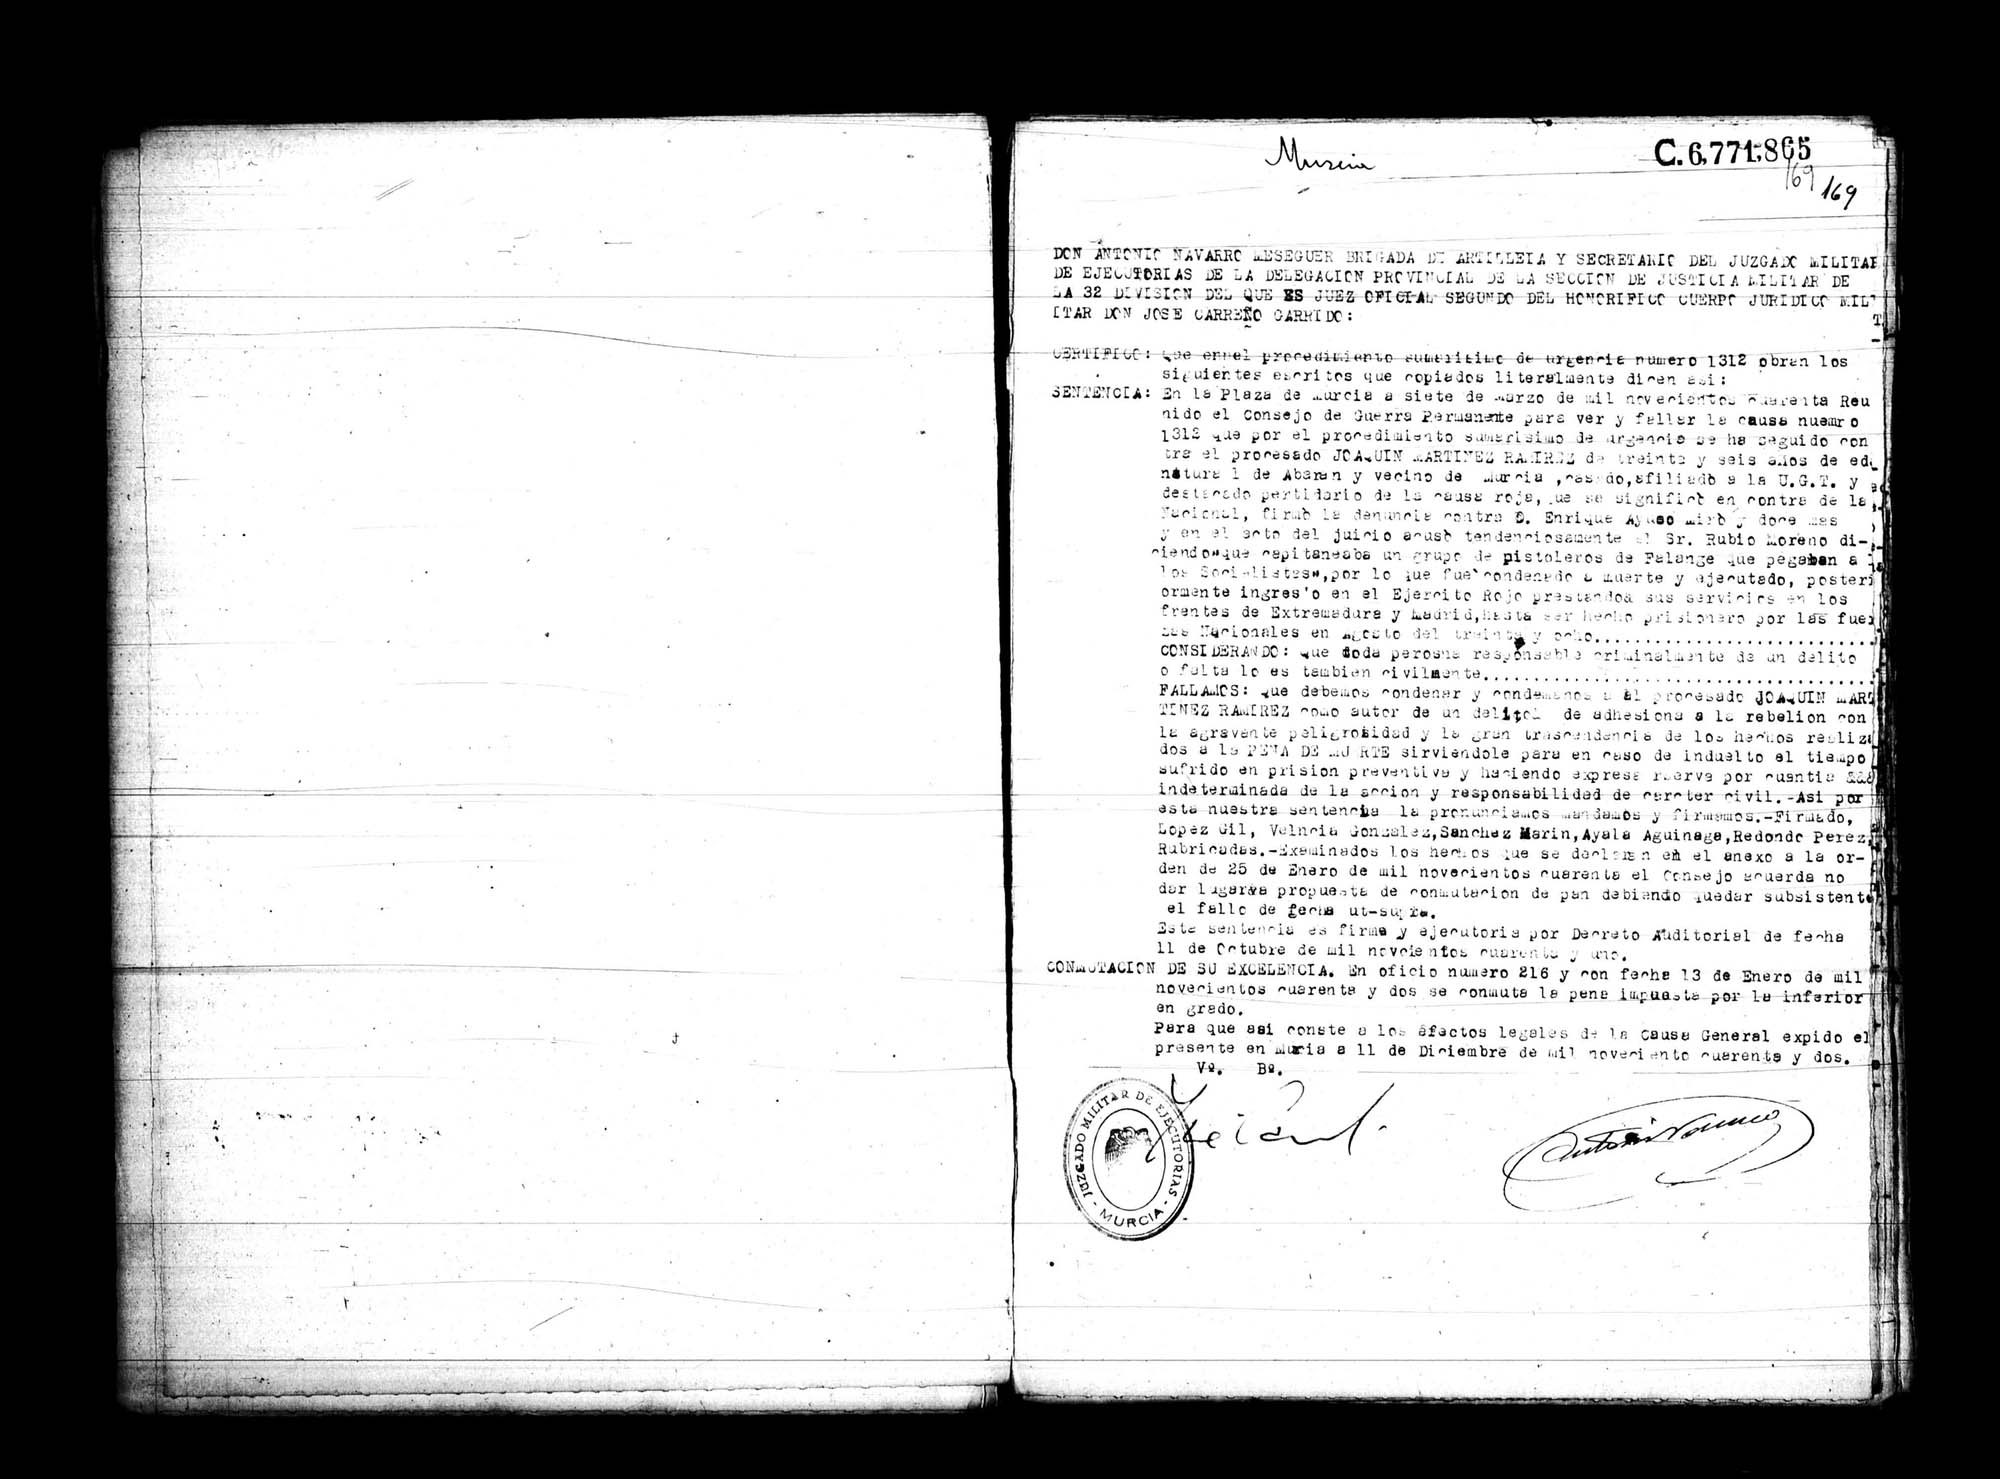 Certificado de la sentencia pronunciada contra Joaquín Martínez Ramírez, causa 1312, el 11 de diciembre de 1942 en Murcia.